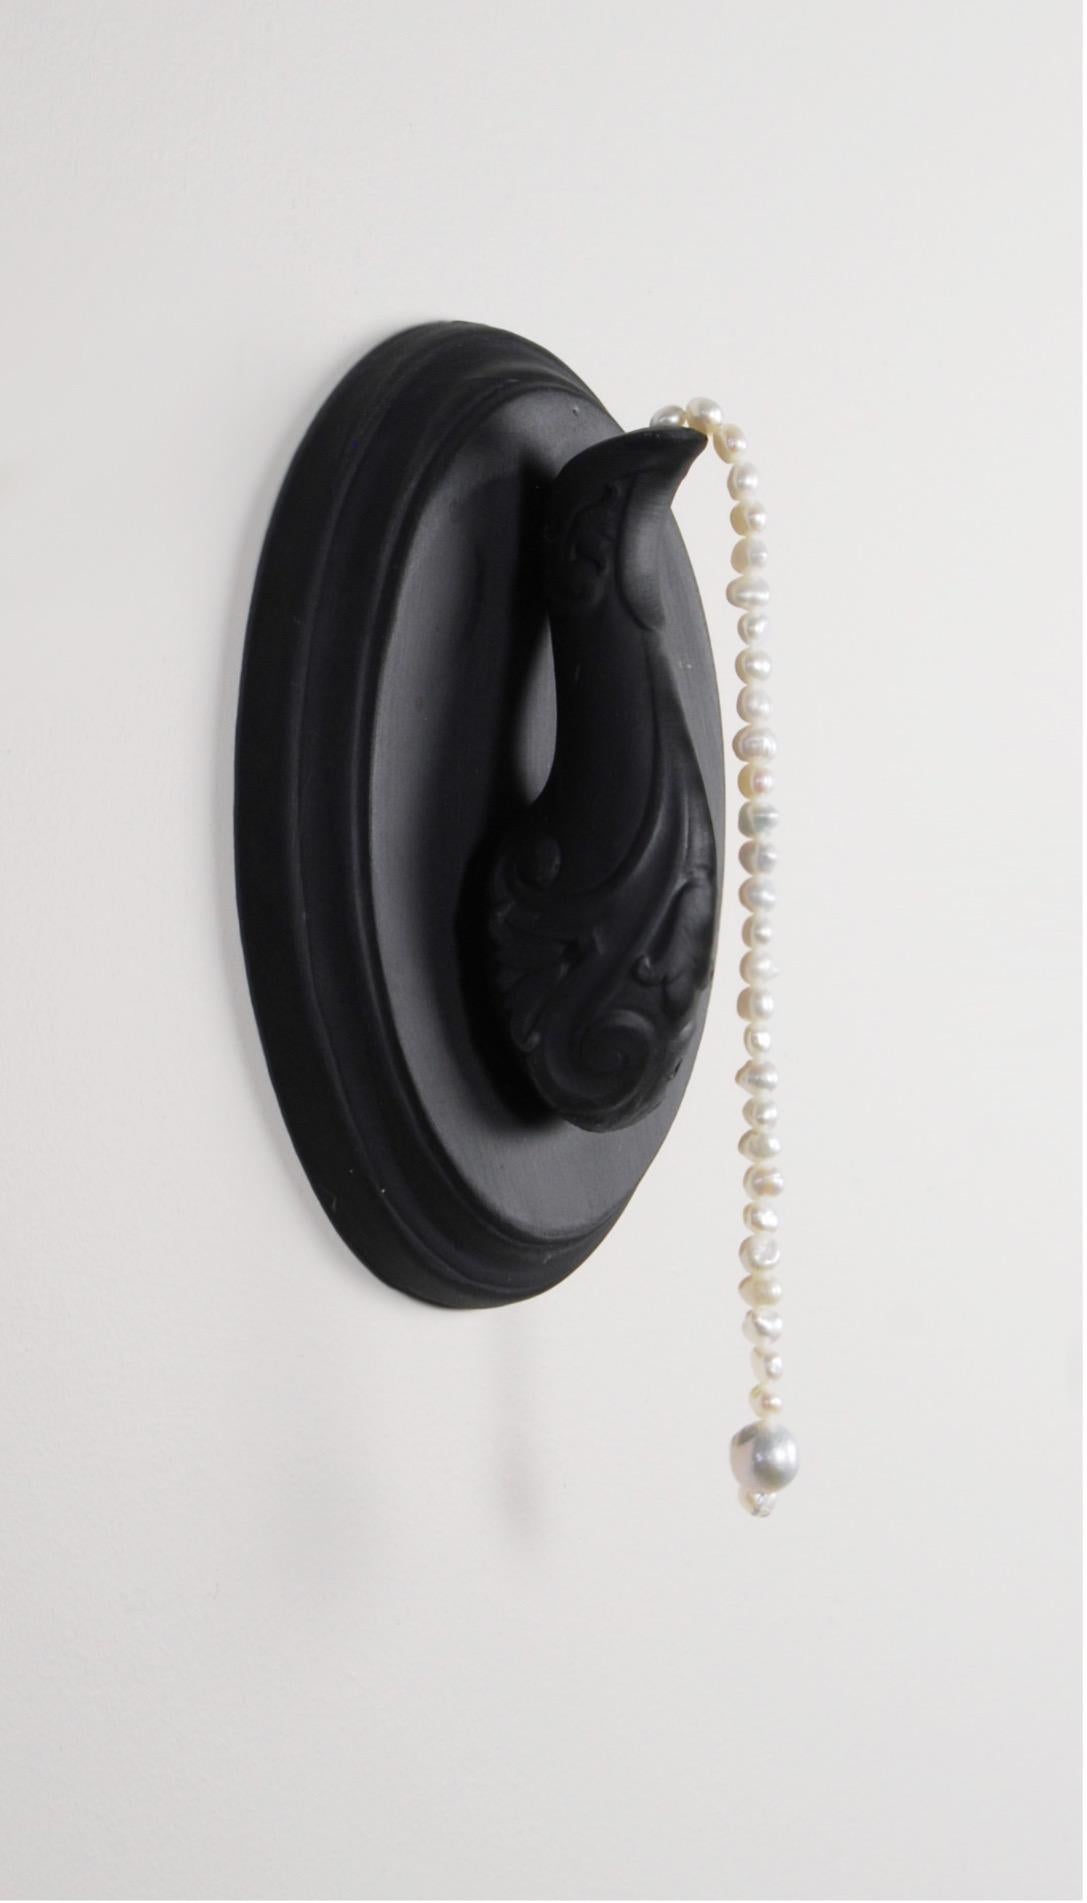 Matt Smith Abstract Sculpture – Aiden (Spout mit Perlen), 2021, Schwarz Parian, Süßwasserperlen